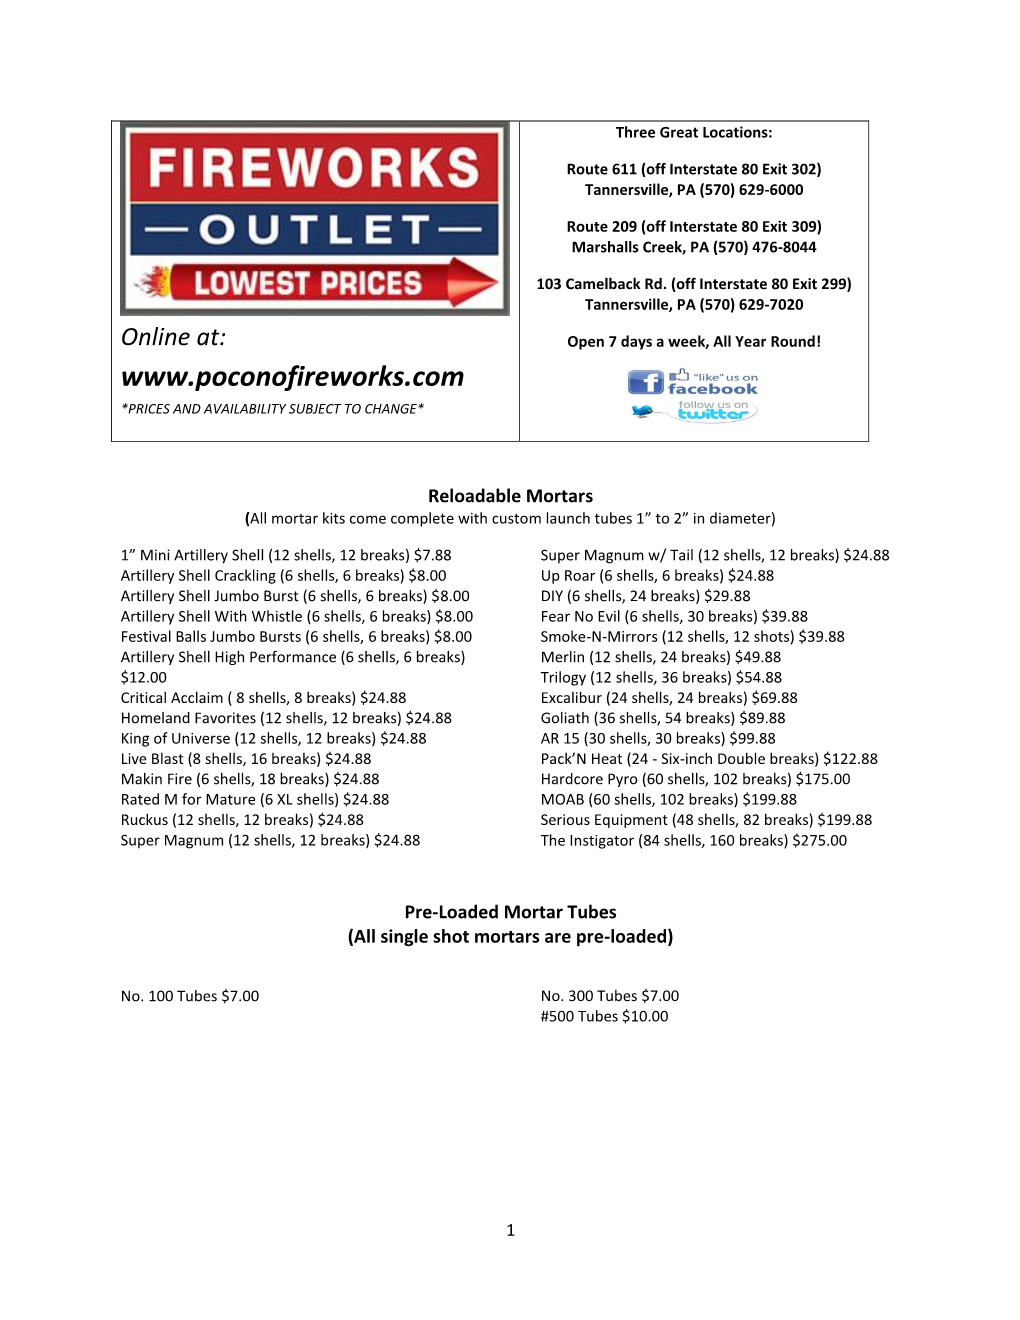 Fireworks Outlet Catalog 2020